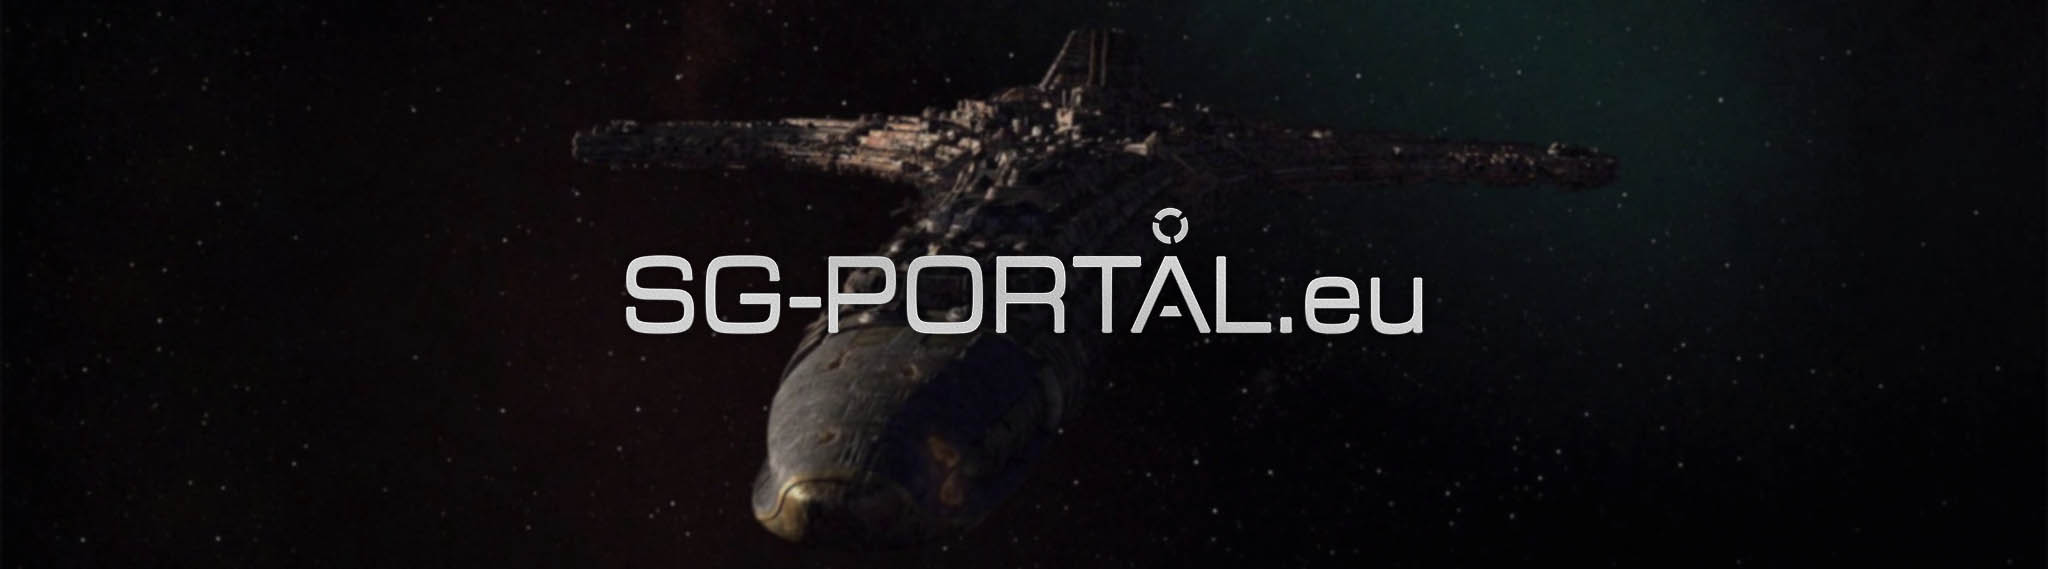 Vítejte na webu SG-PORTAL.eu